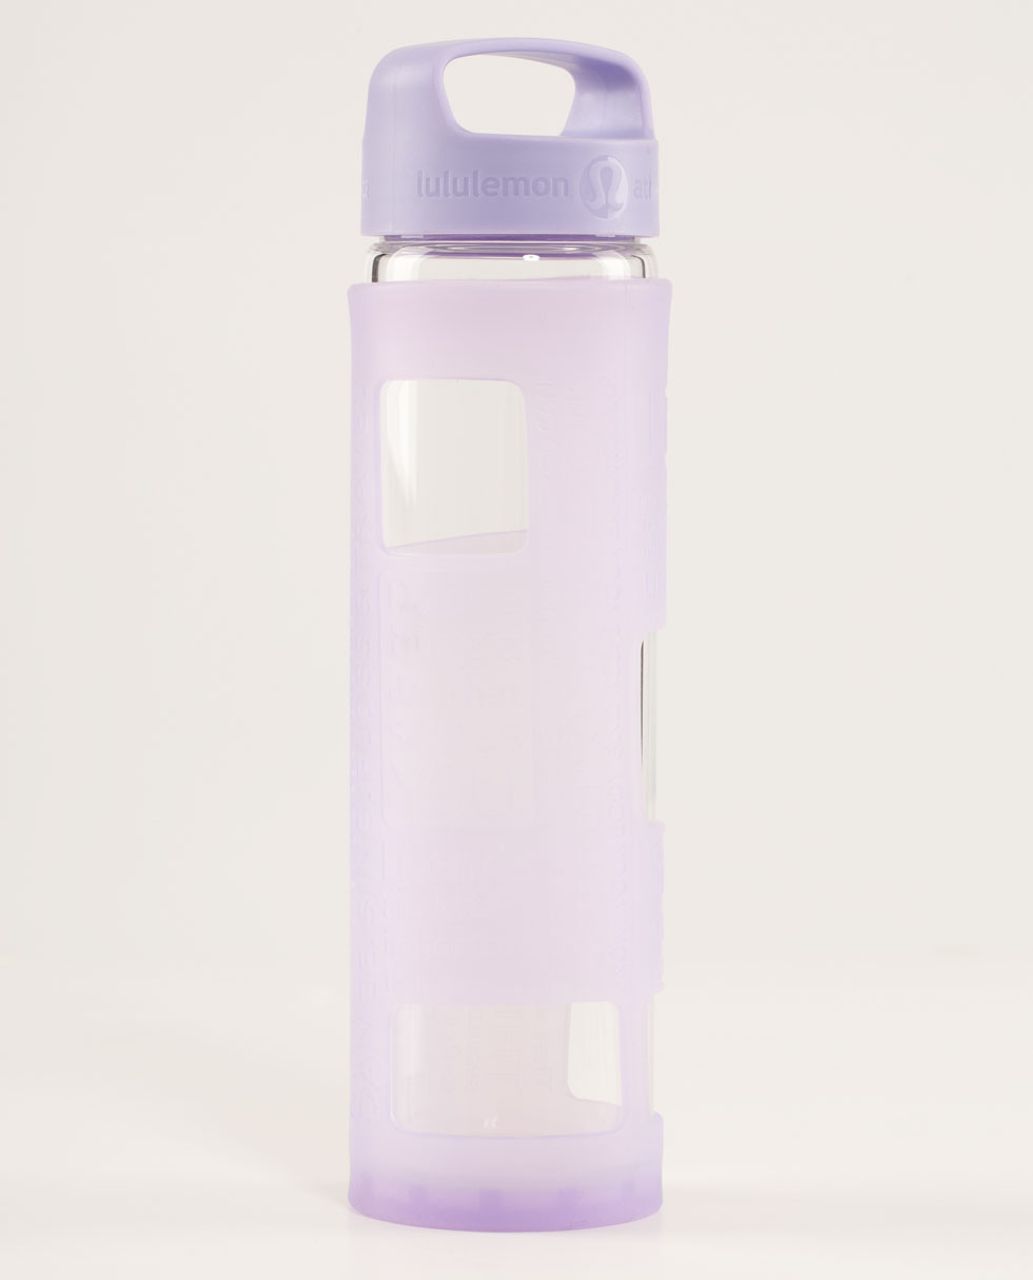 Lululemon Pure Balance Waterbottle - Lilac